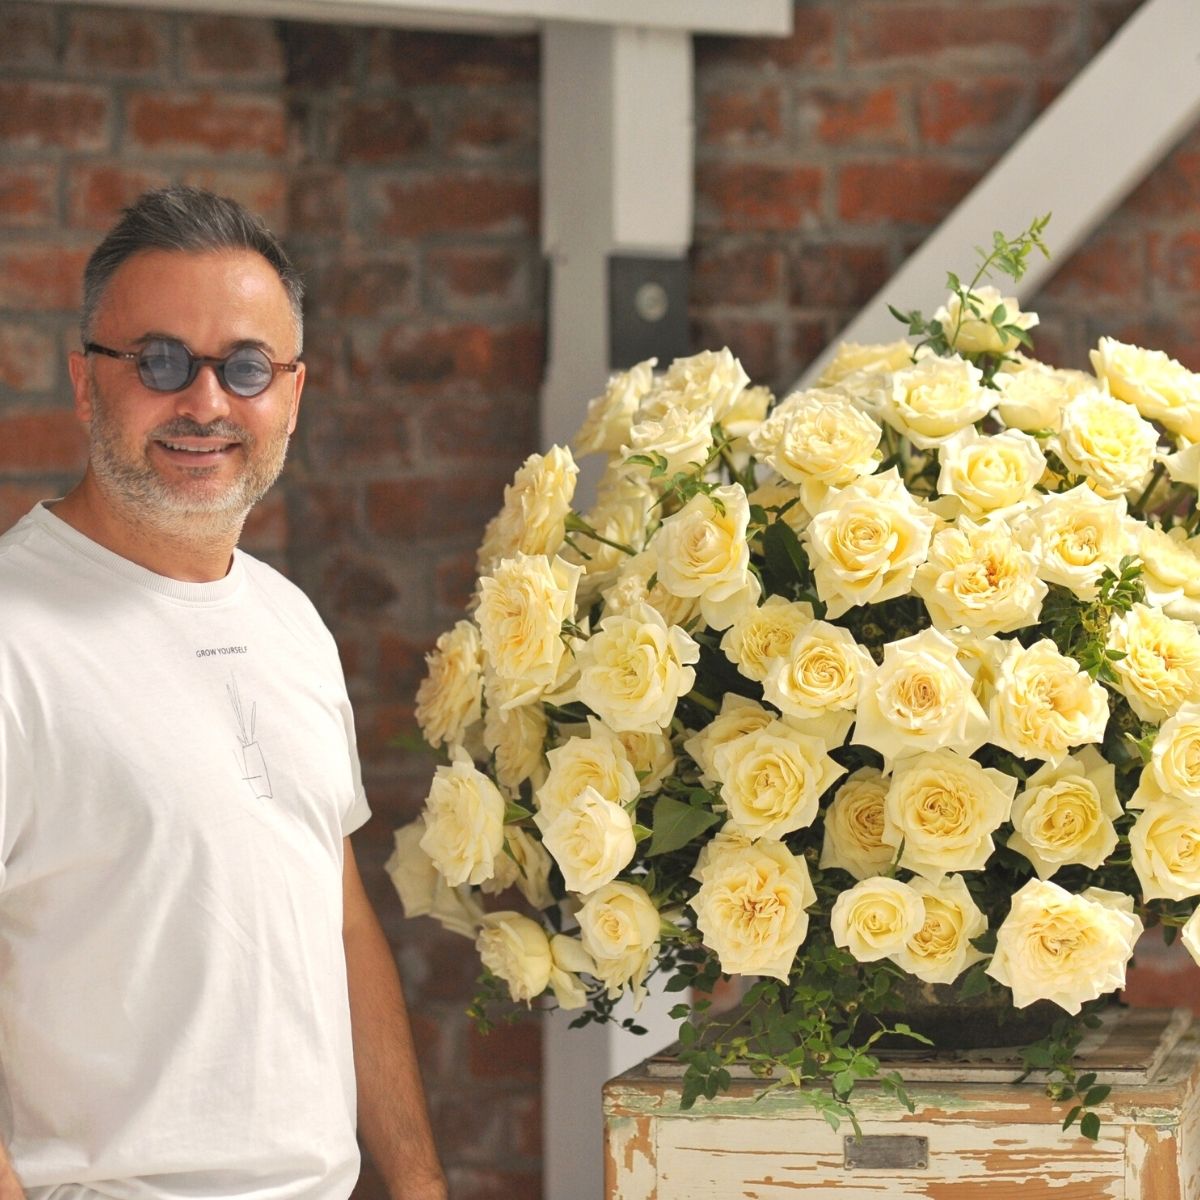 Nicu Bocancea Floral Artist- on Thursd 